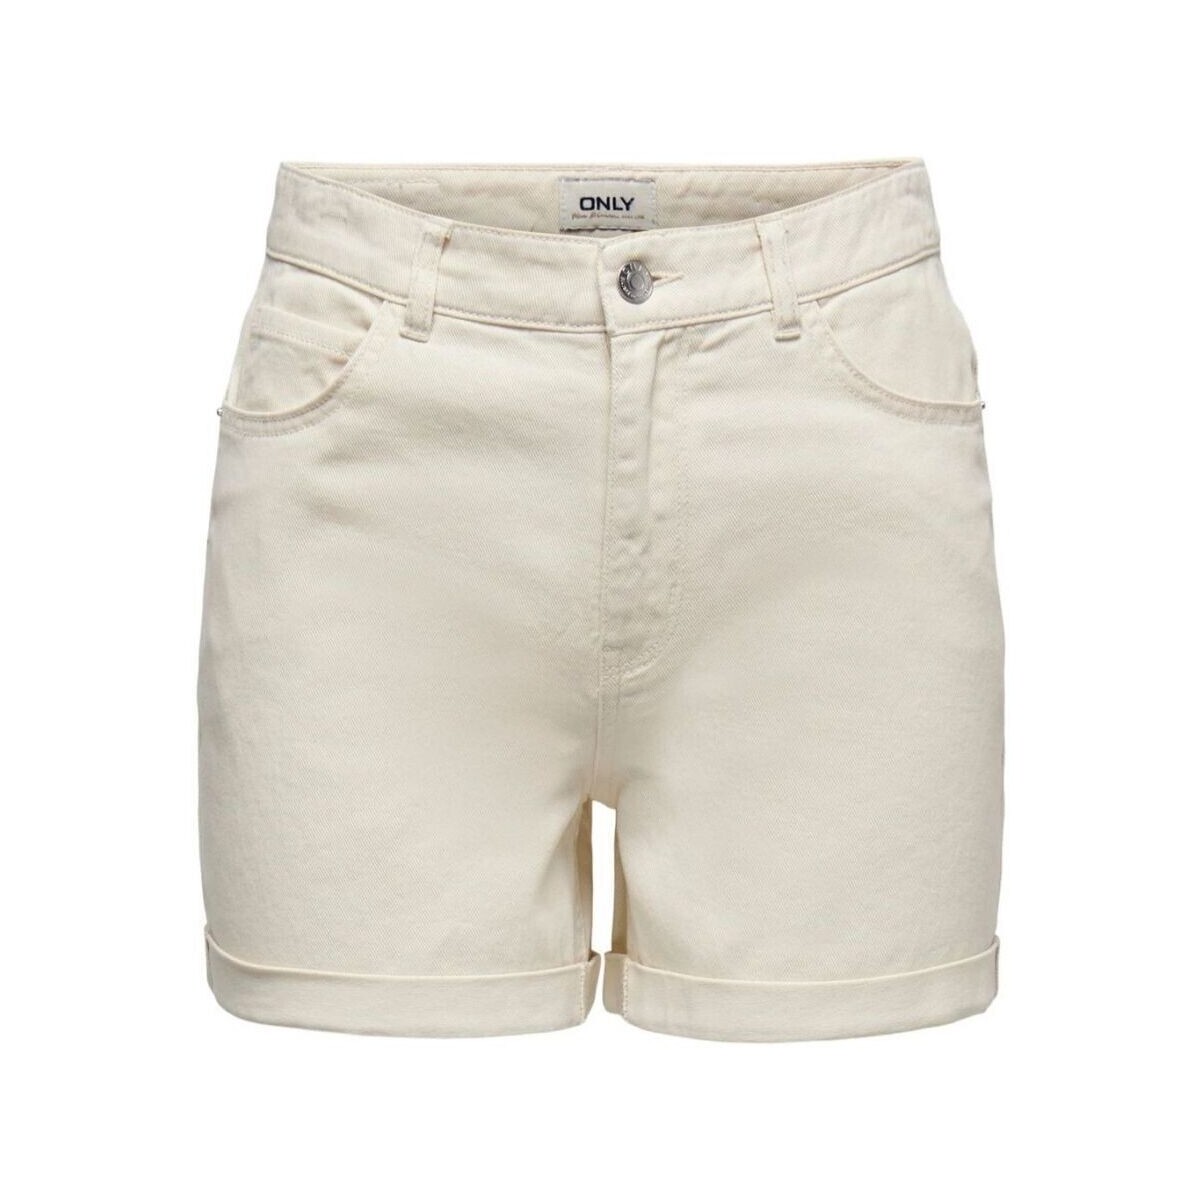 Kleidung Damen Shorts / Bermudas Only 15230571 VEGA-ECRU Weiss